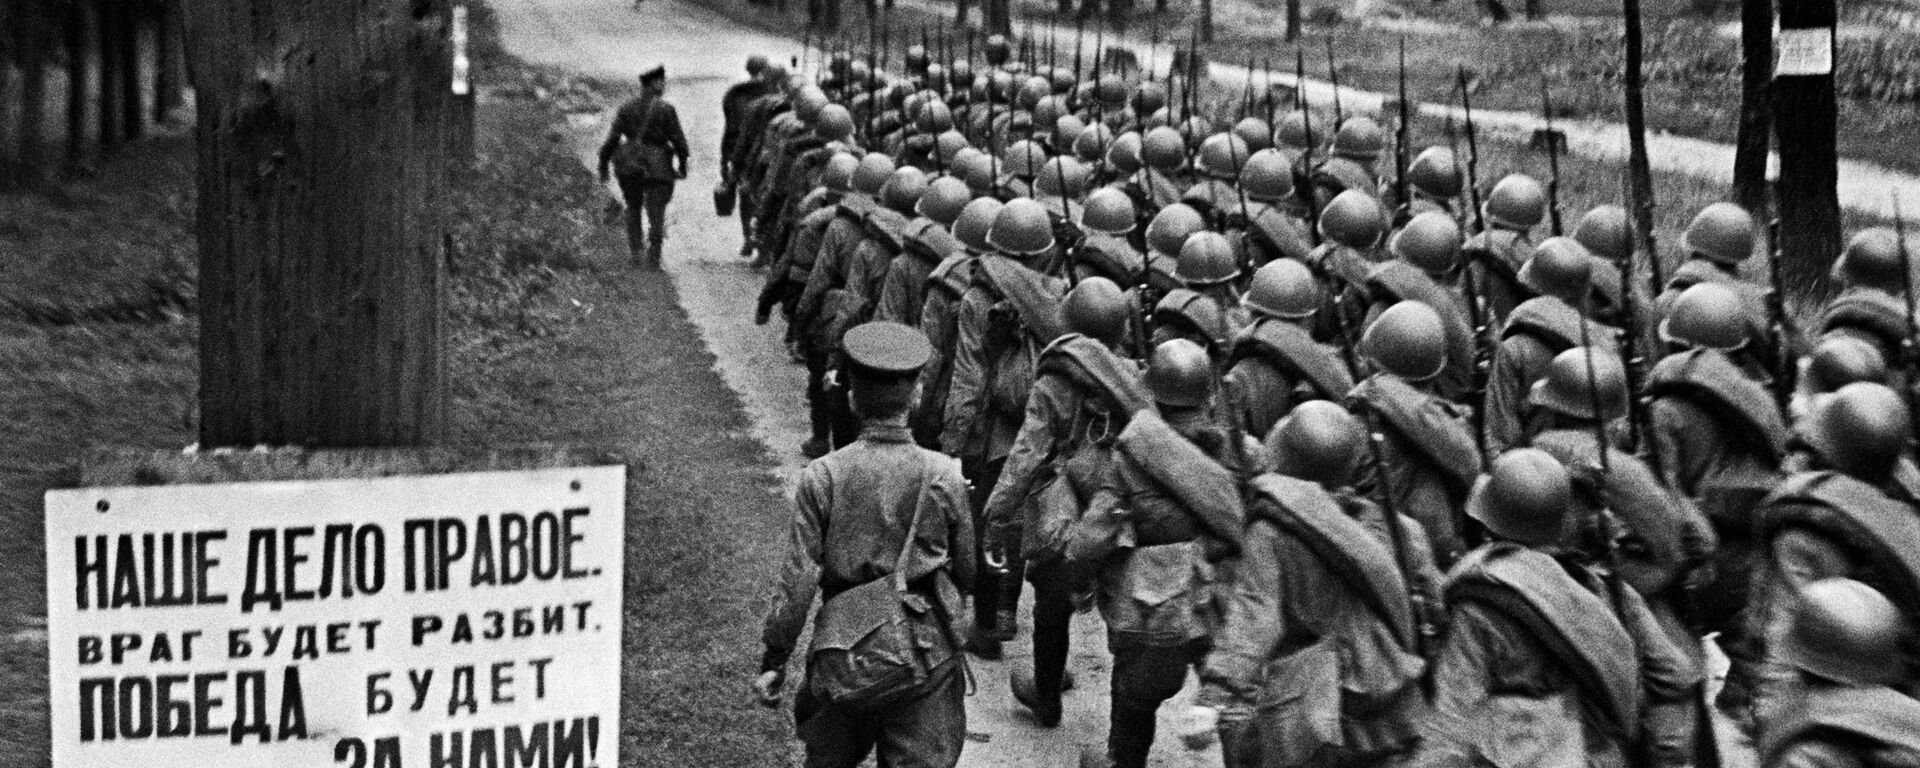 Colunas de combatentes se dirigem à frente de batalha a partir de Moscou, 23 de junho de 1941 - Sputnik Brasil, 1920, 22.06.2021